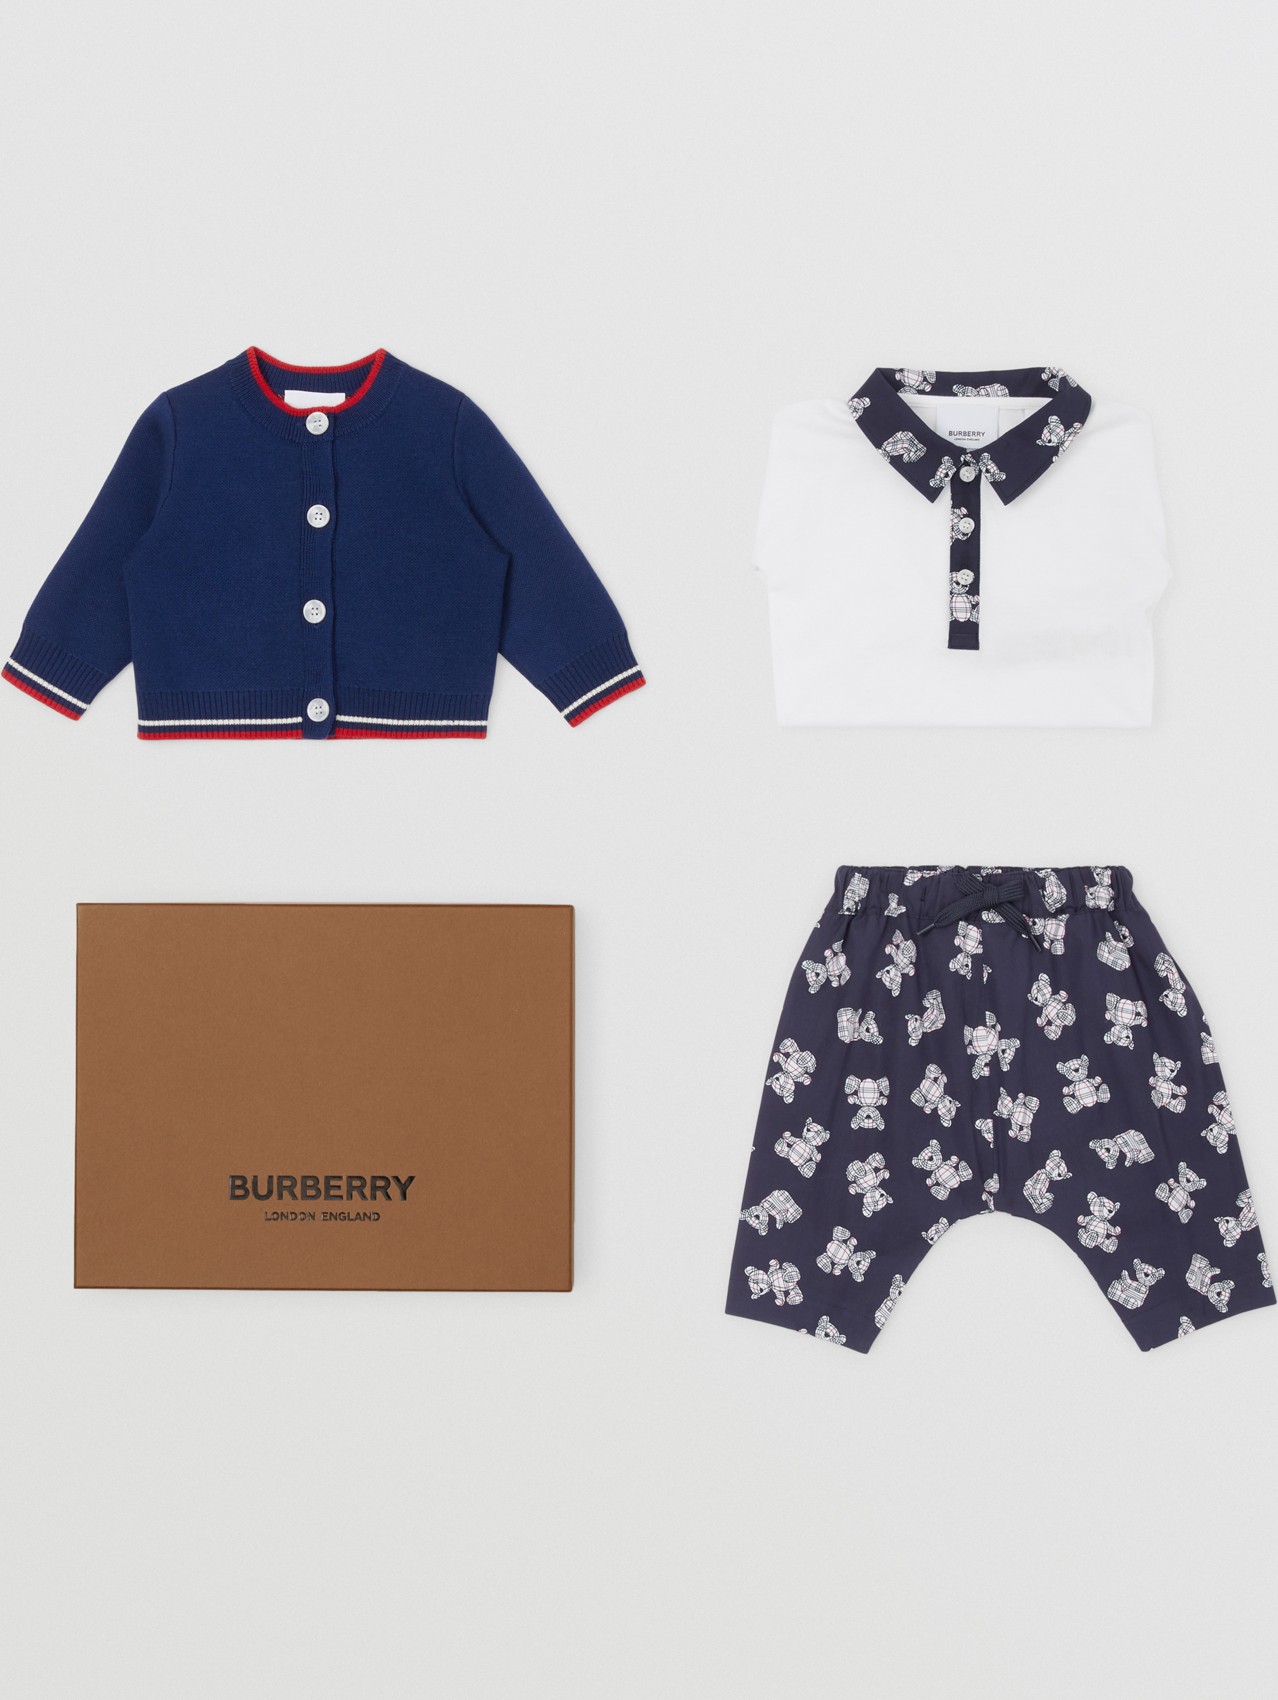 Burberry baby set